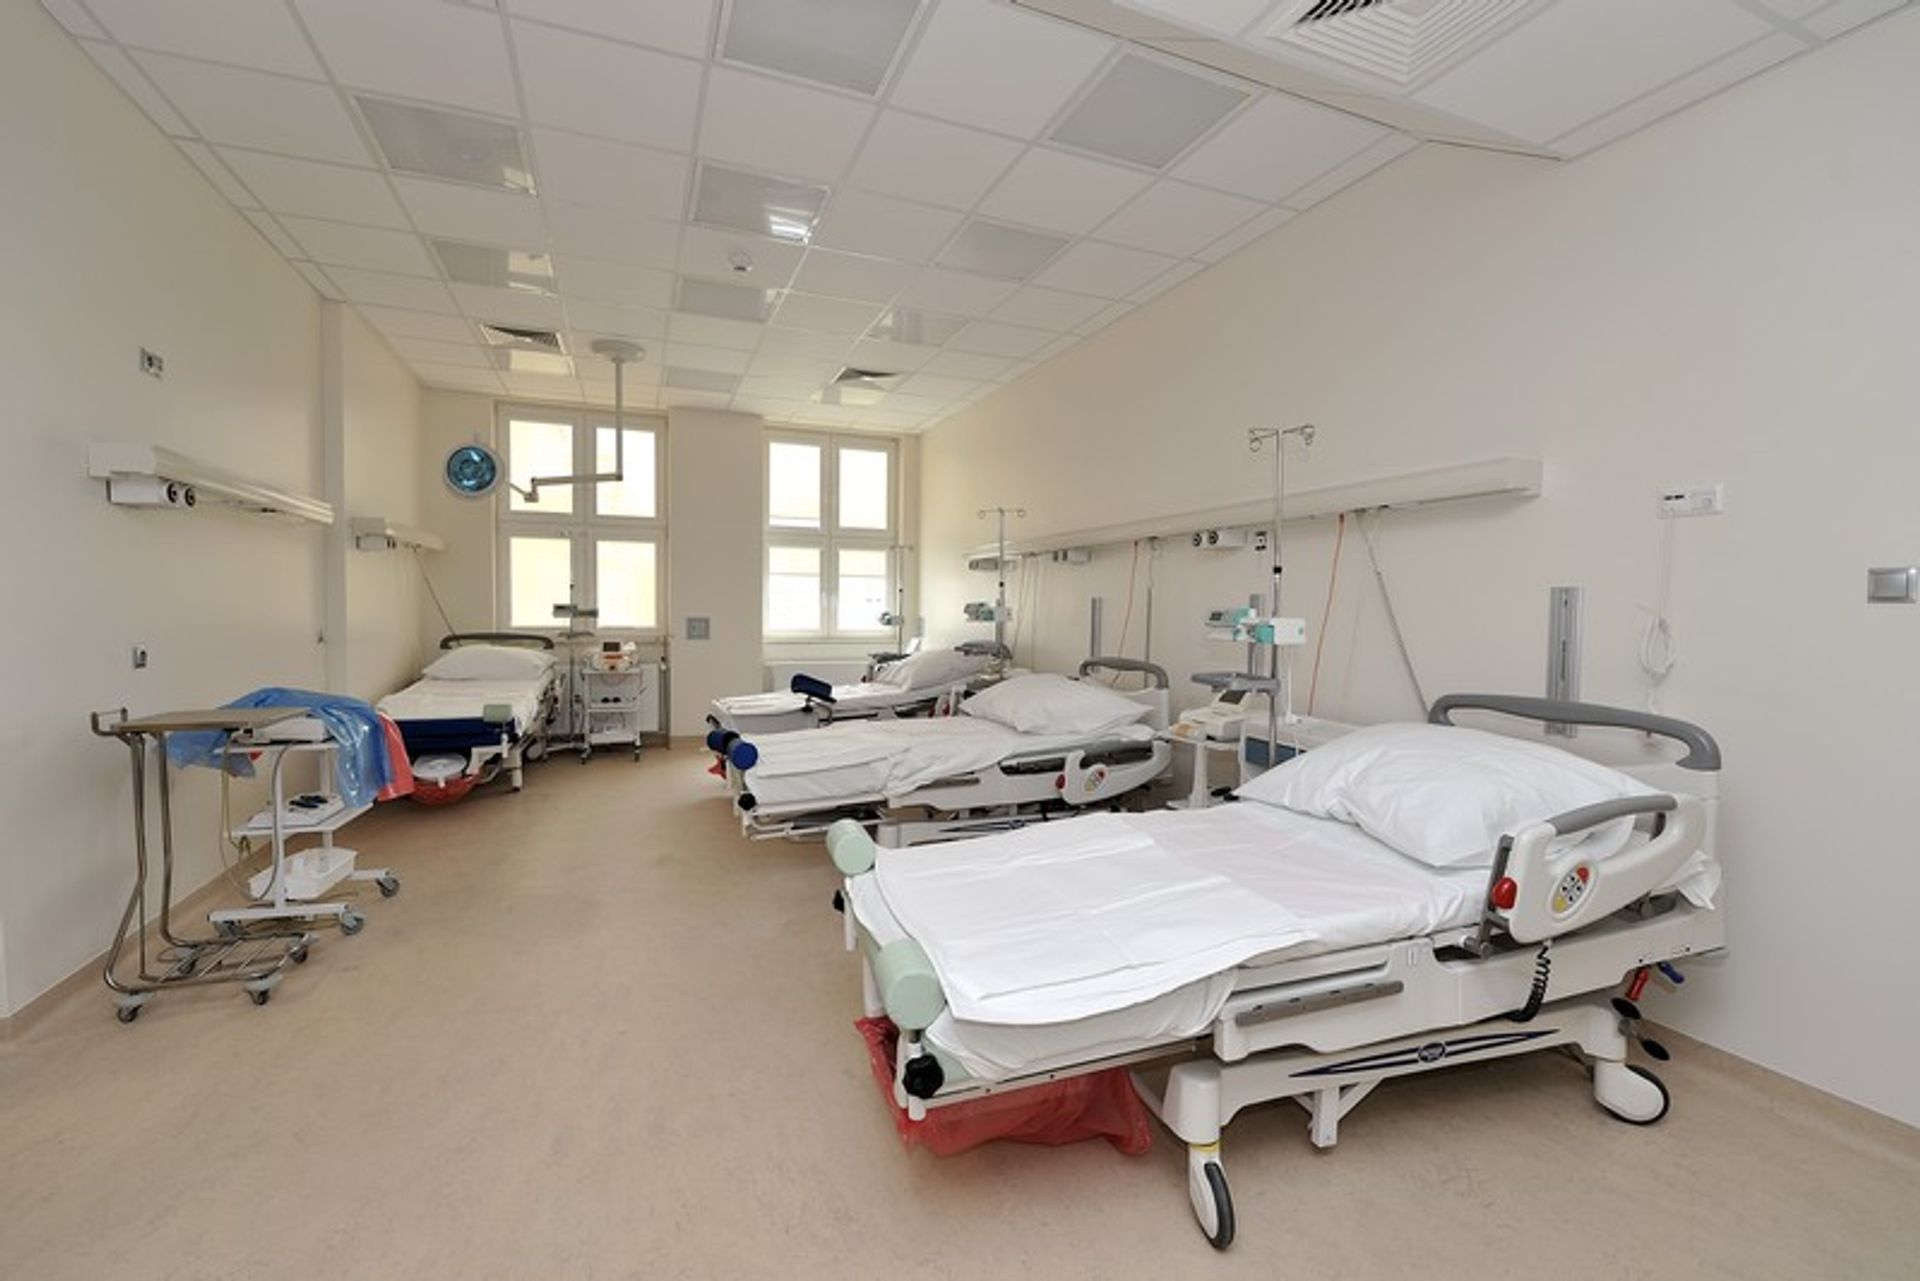  Budimex rozbuduje szpital w Białymstoku